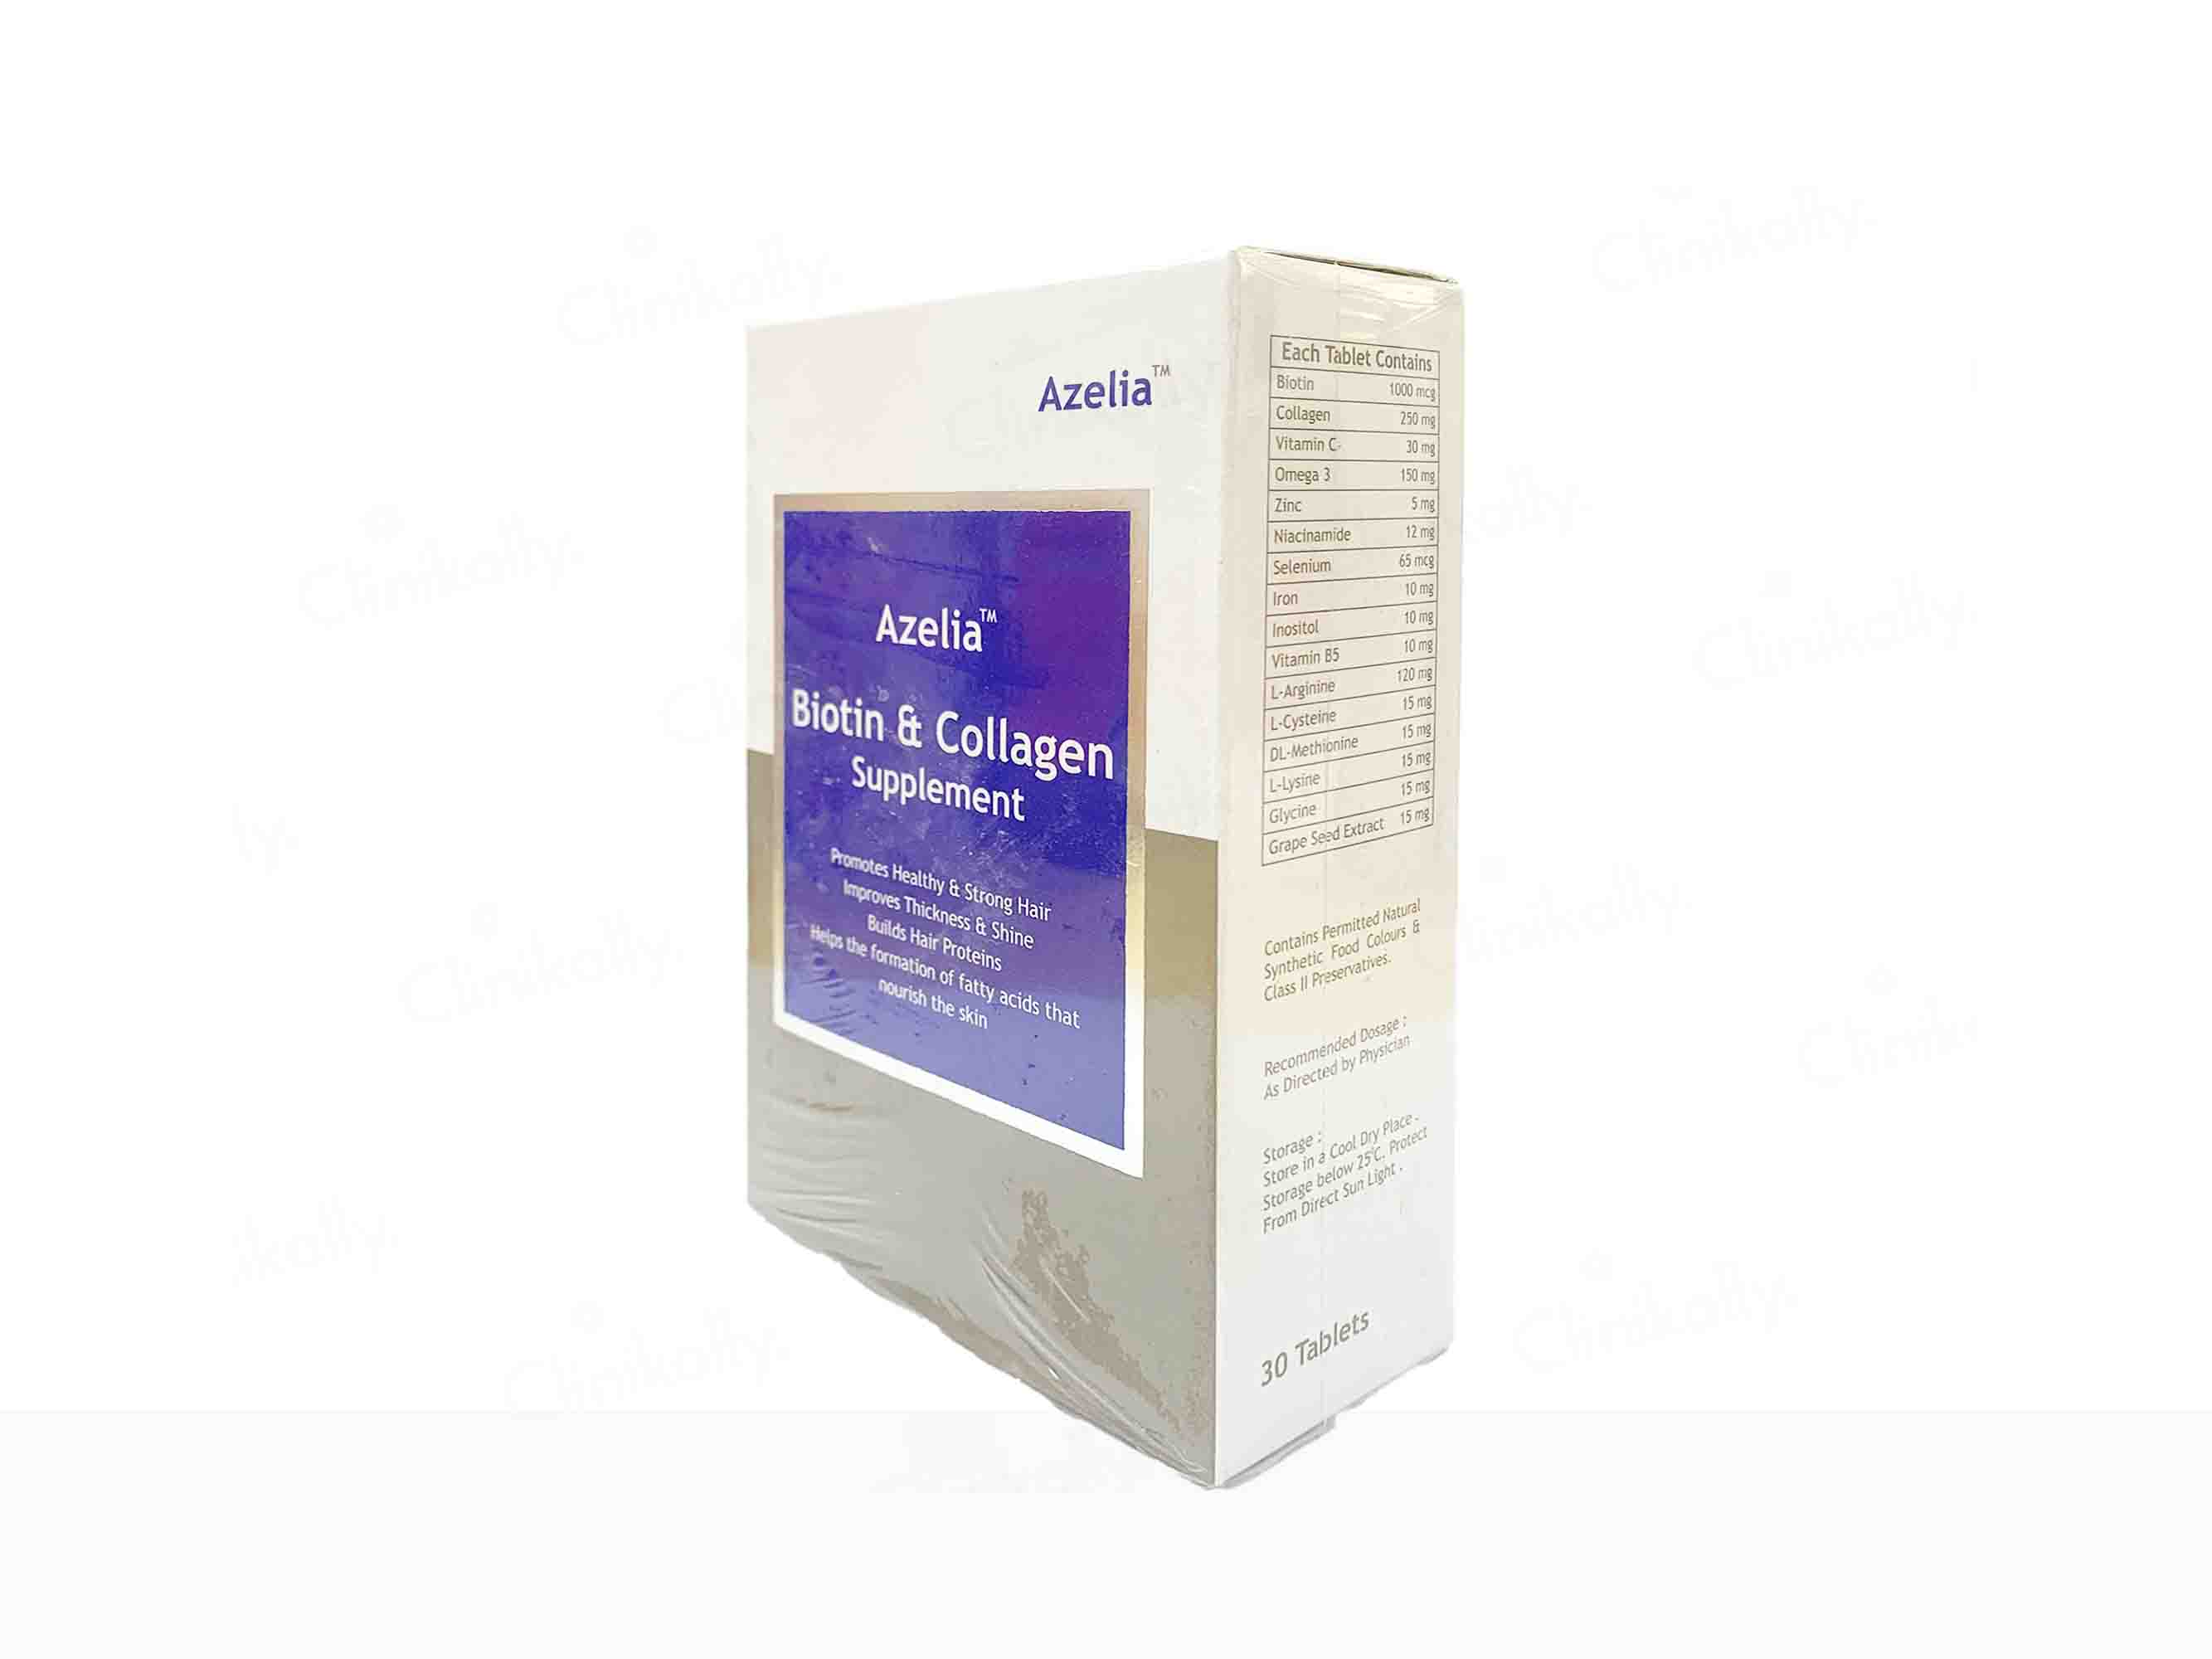 Azelia Biotin & Collagen Supplement Tablet